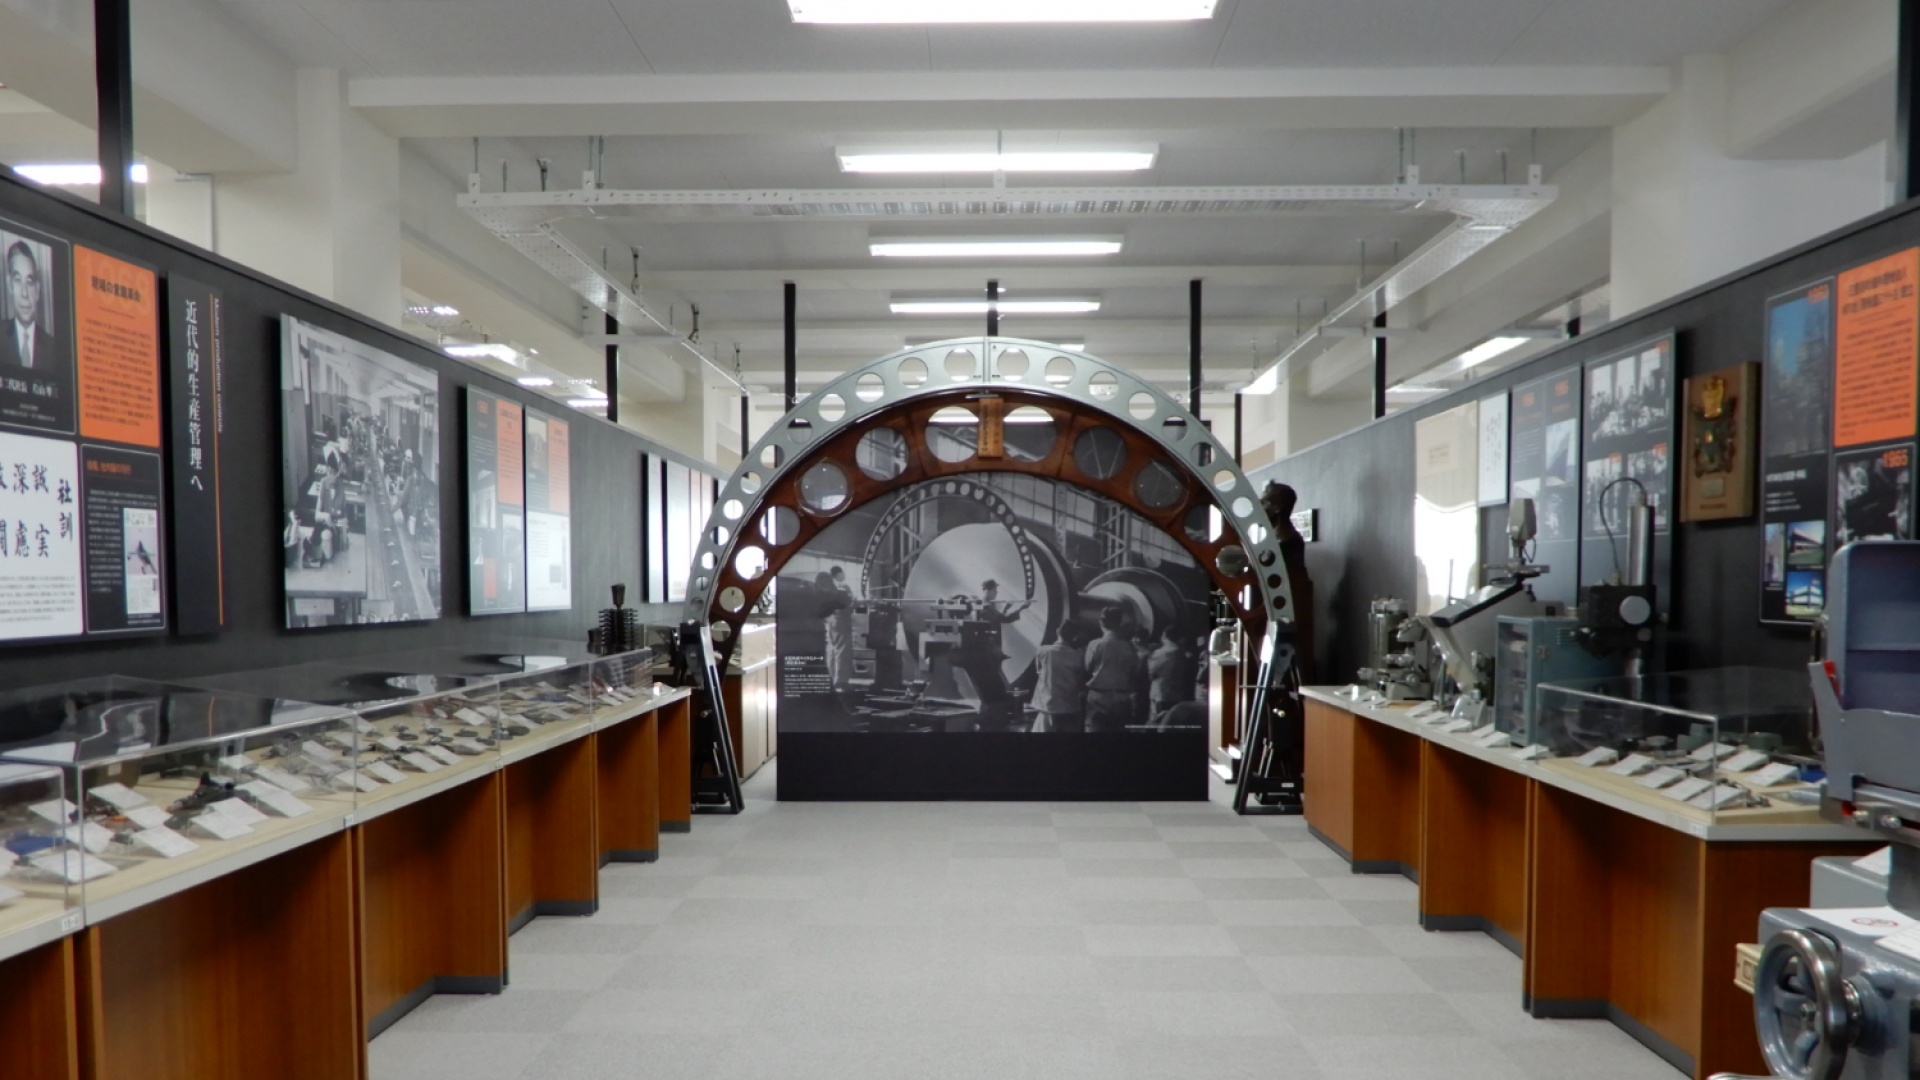 พิพิธภัณฑ์มิทุโทะโยะ (อาคารอนุสรณ์นุมะตะ Numata / พิพิธภัณฑ์เครื่องมือวัดขนาด)